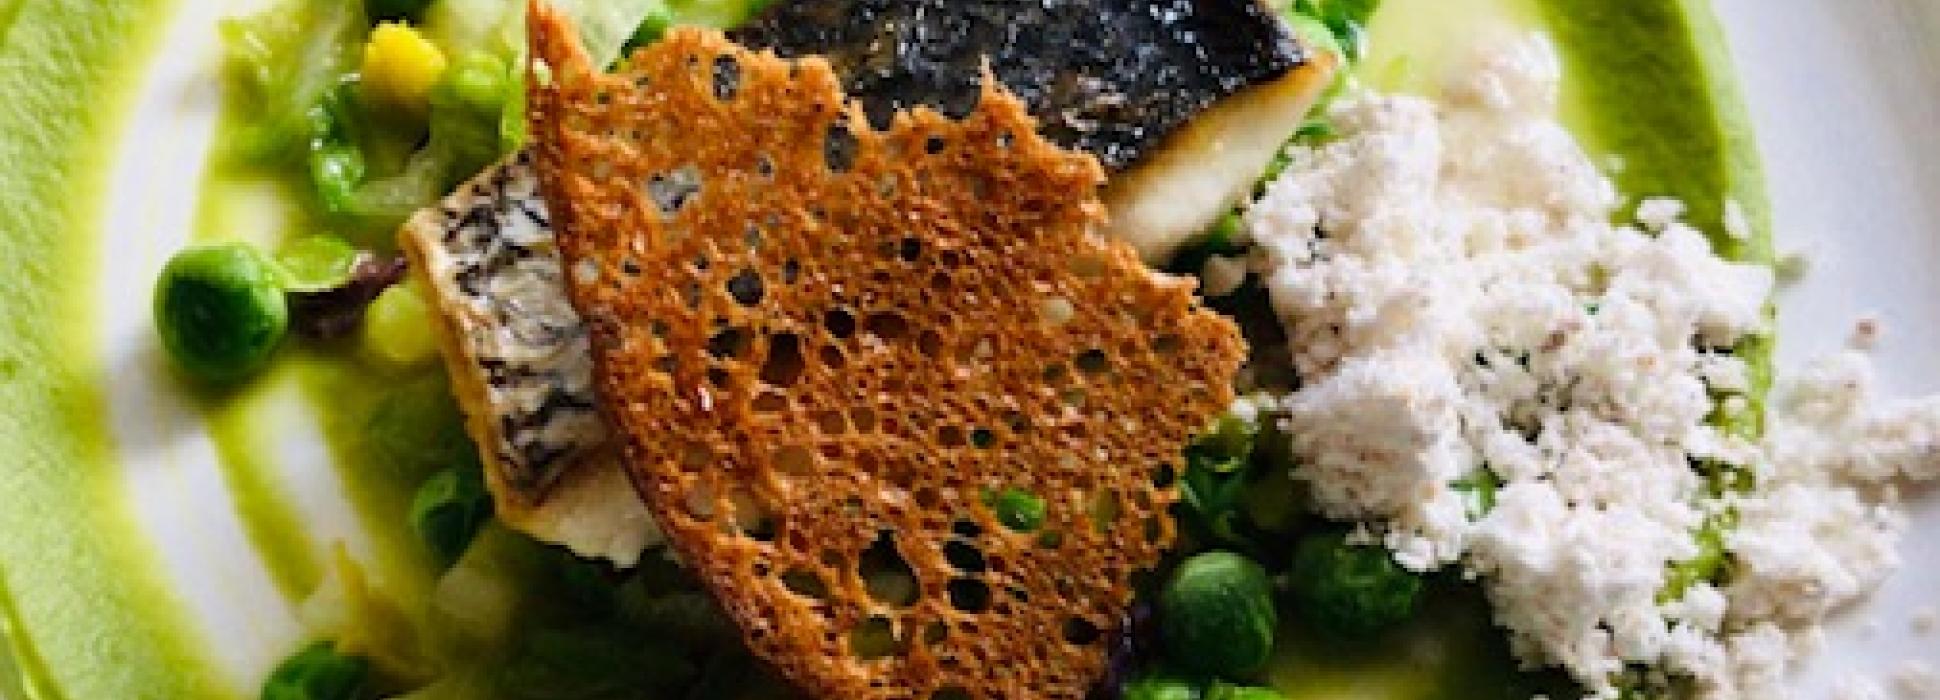 Quatre restaurants gastronomiques normands sont distingués par le Guide Michelin